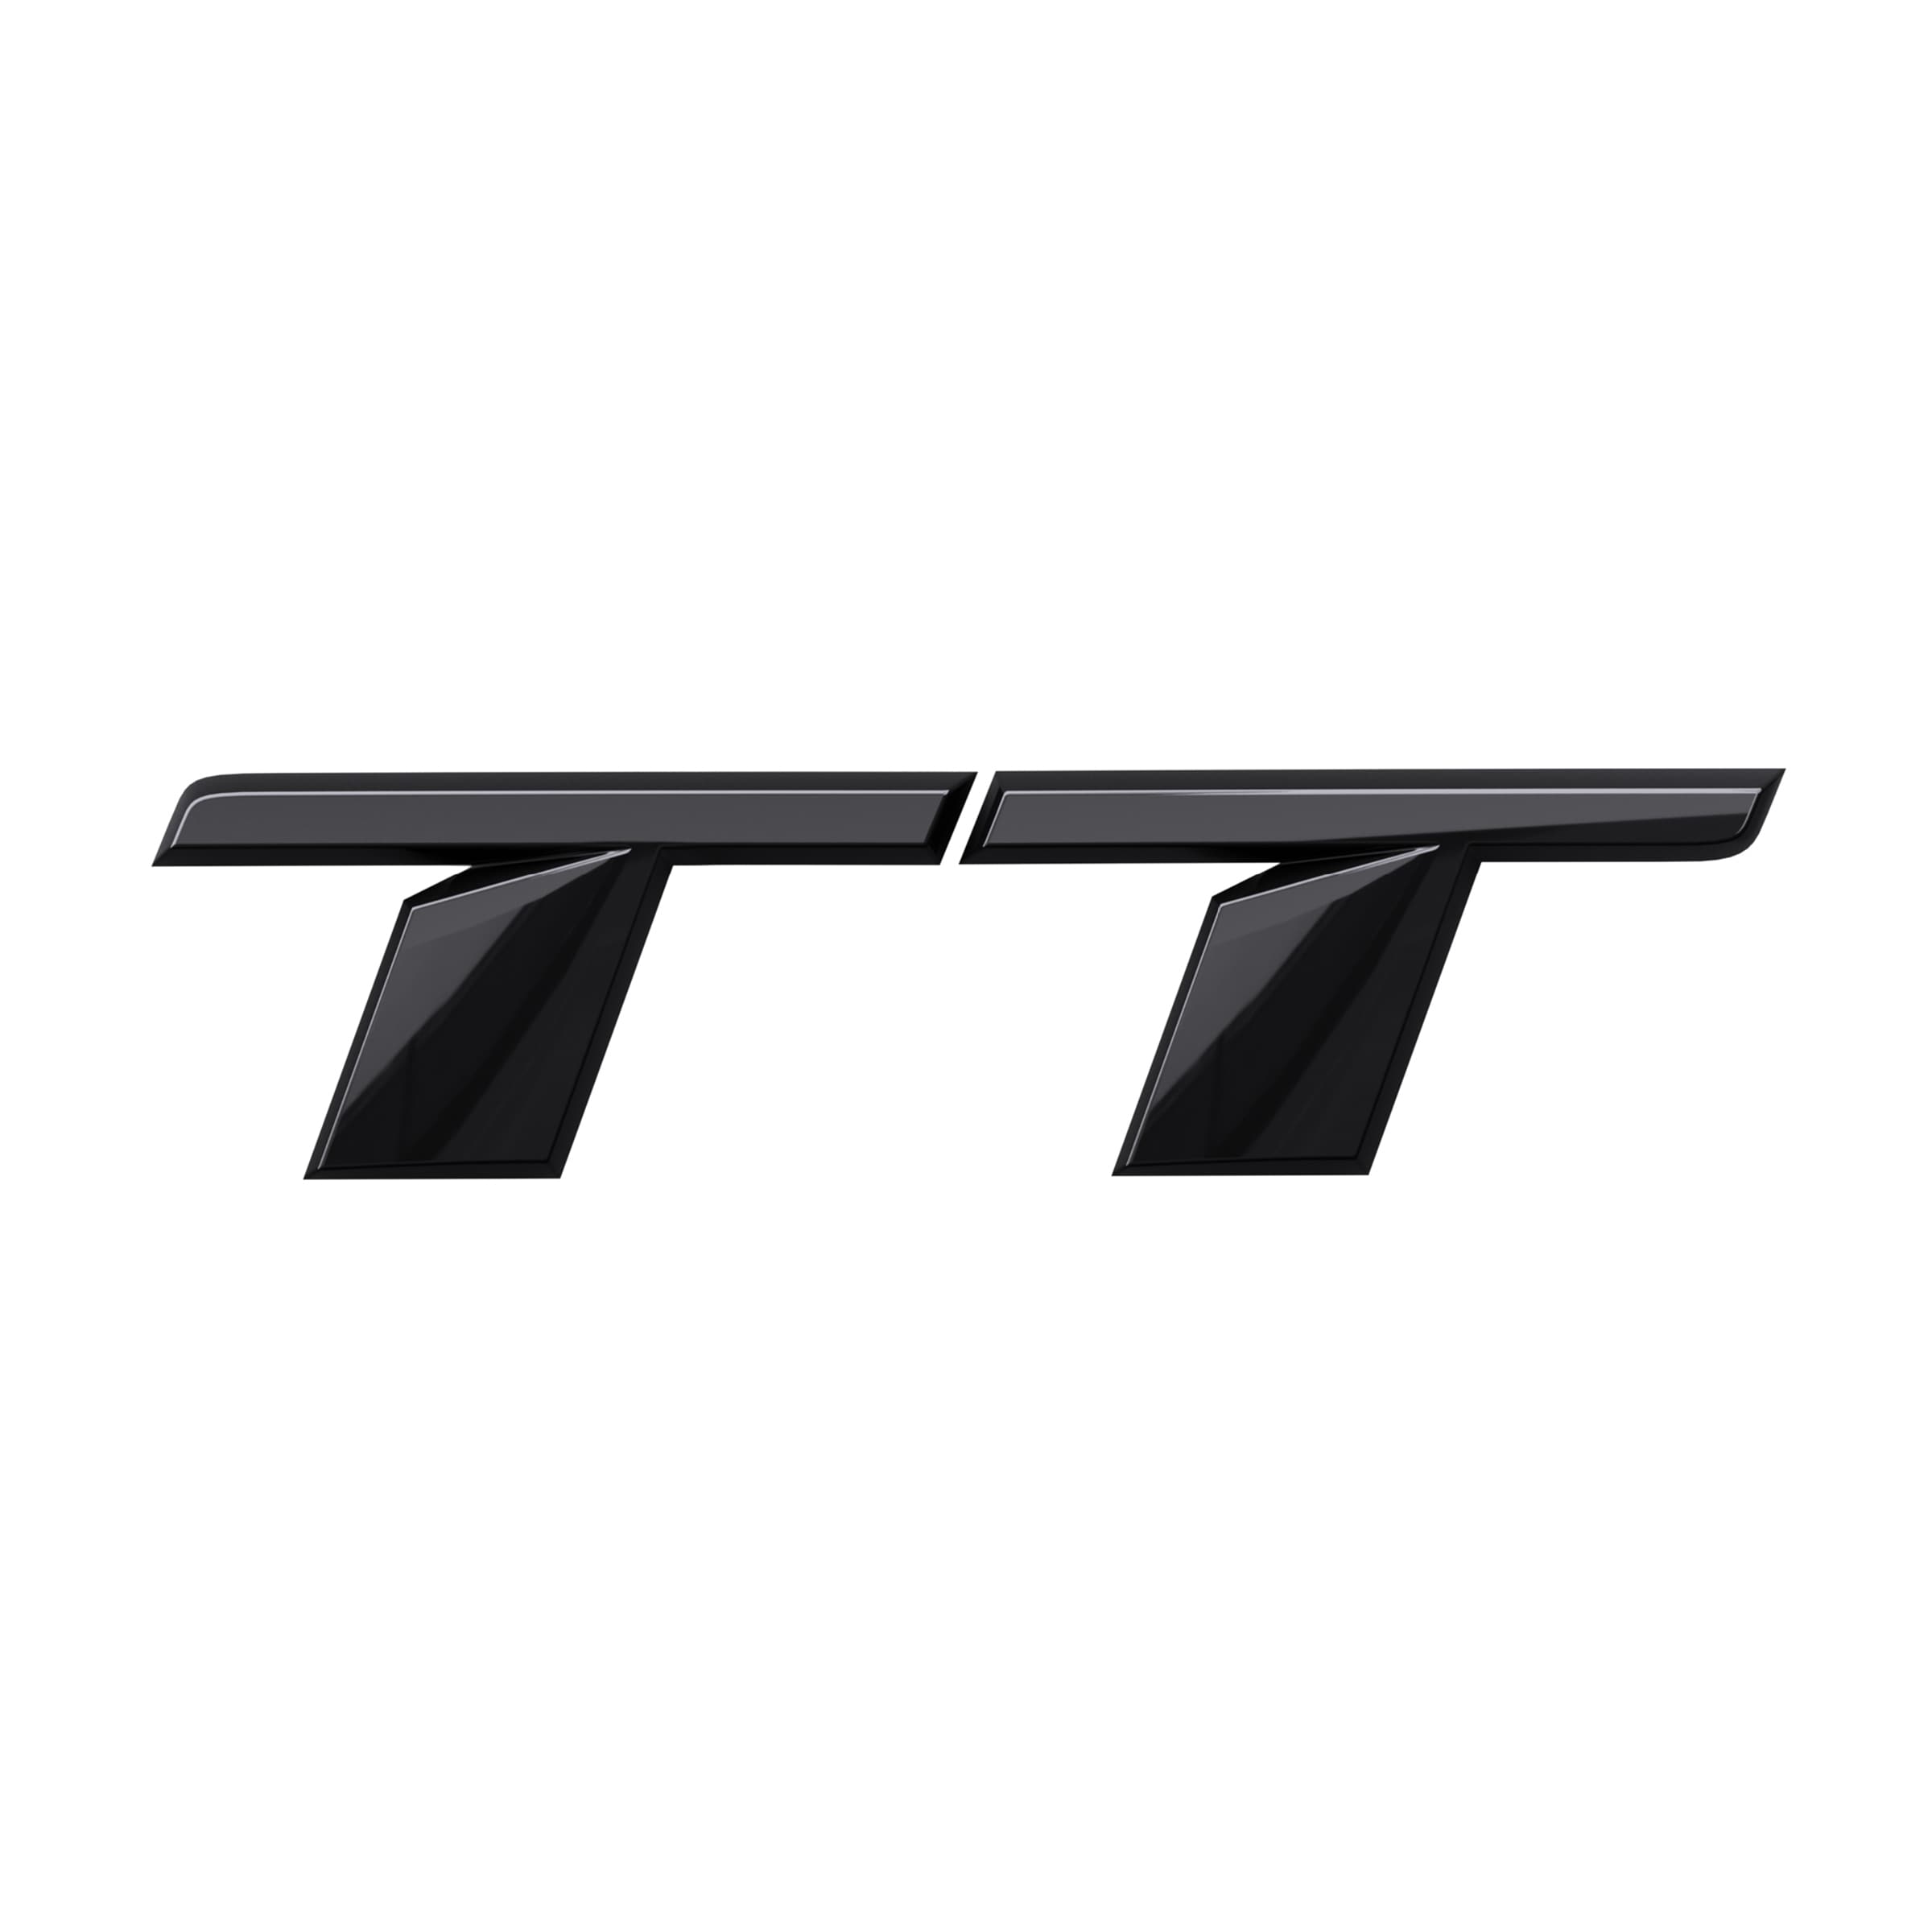 Modellbezeichnung TT in Schwarz